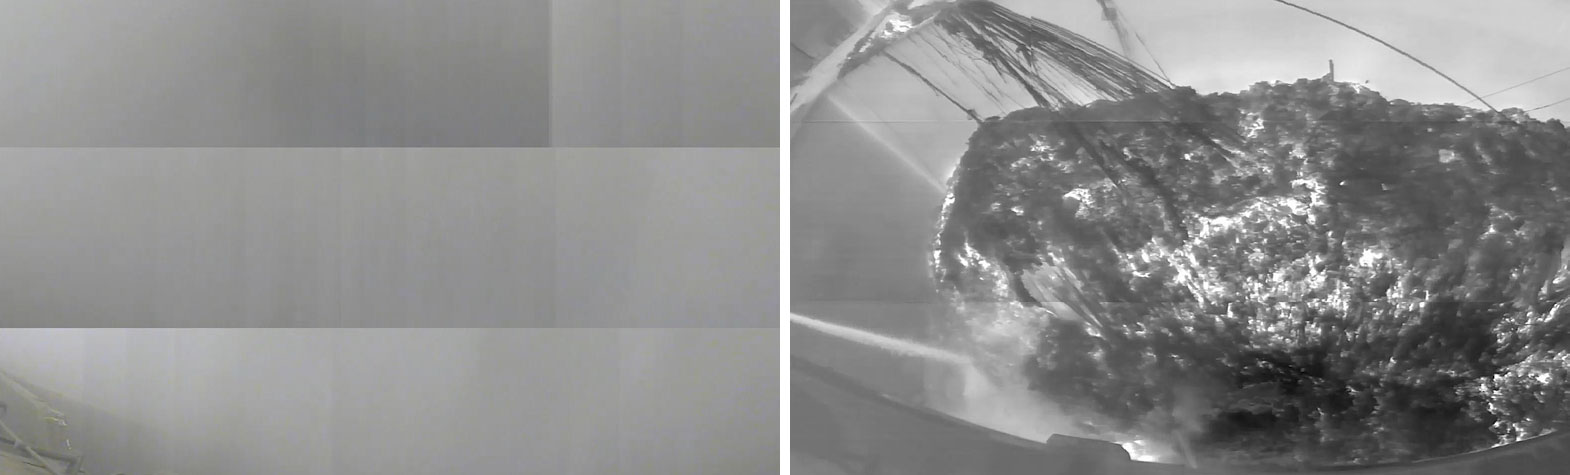 La surface de surveillance est bien visible dans l'image thermique, même en cas de fumée et de vapeur.